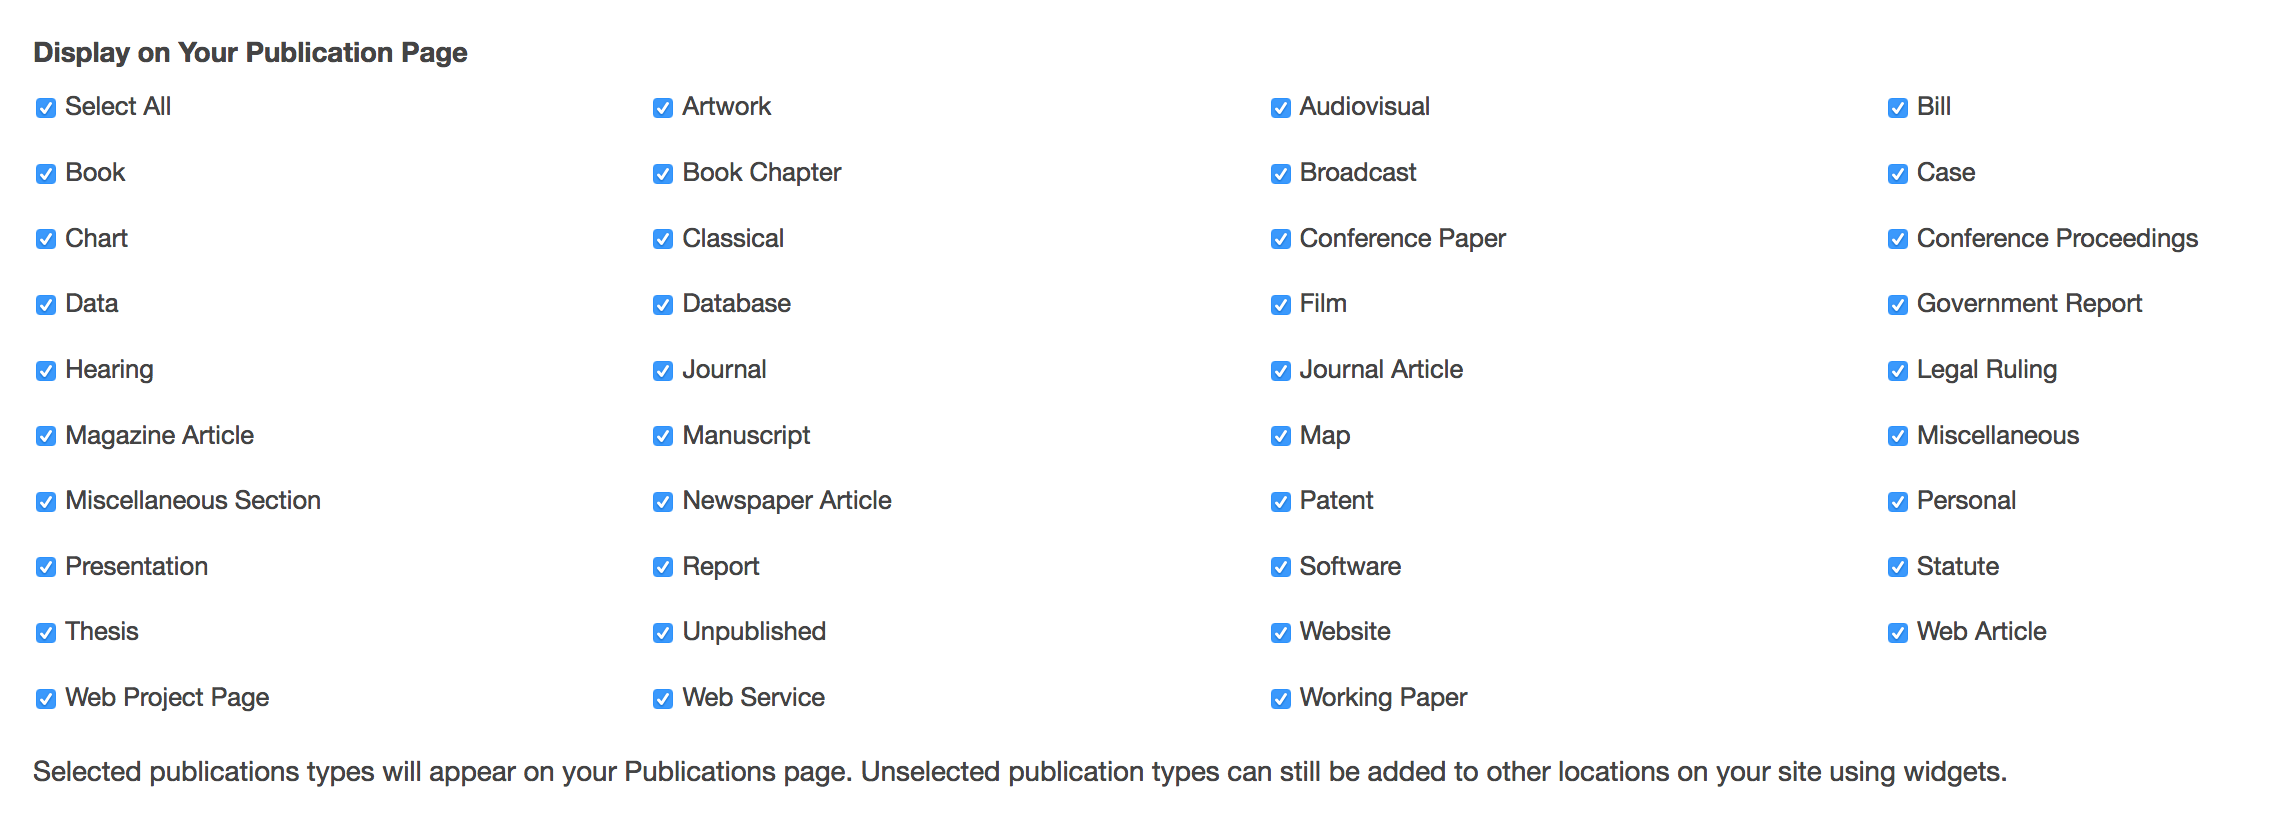 publication settings - publication types